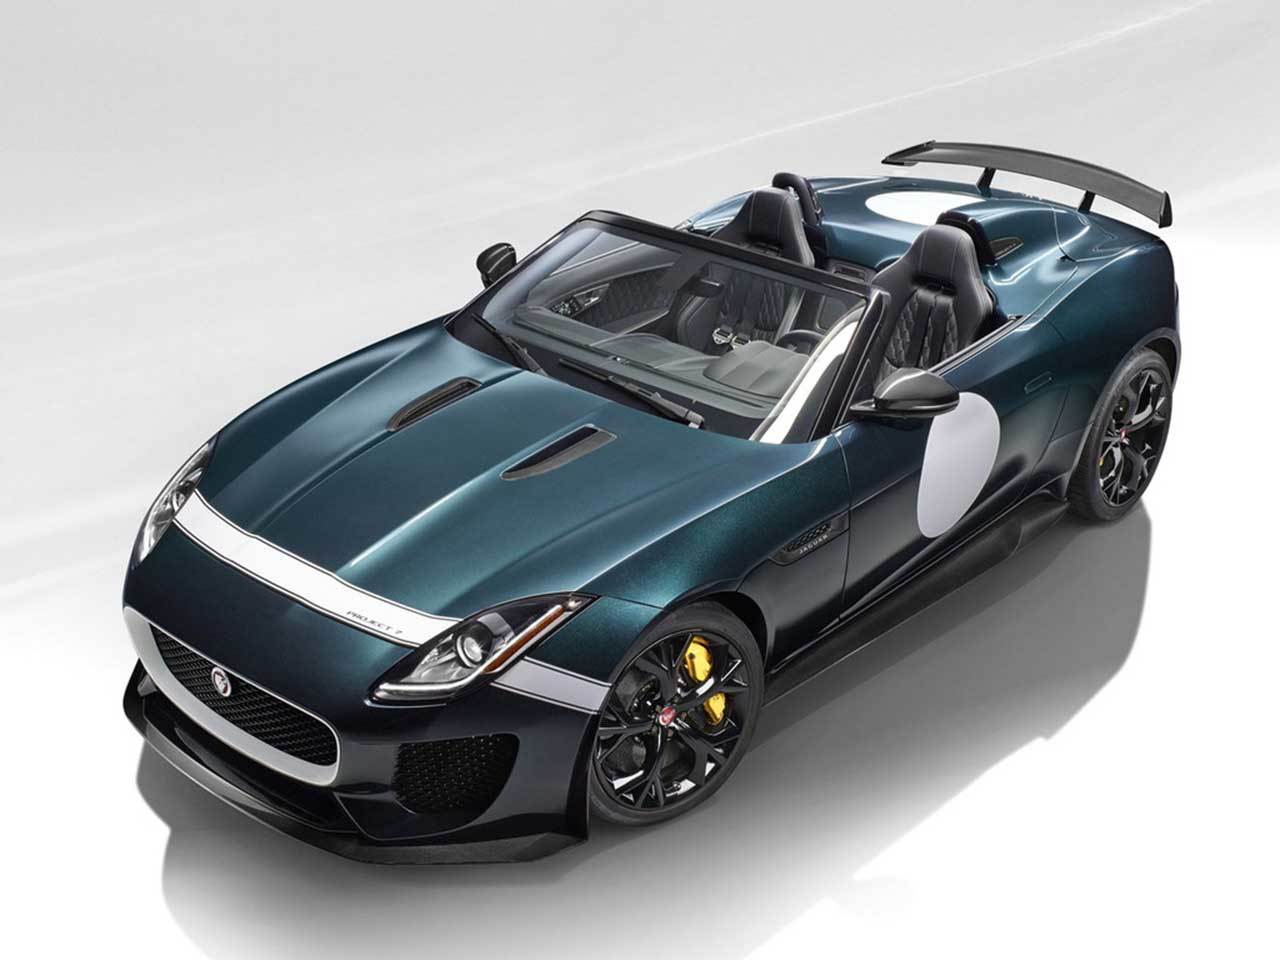 F-type car cover? - Page 2 - Jaguar Forums - Jaguar Enthusiasts Forum